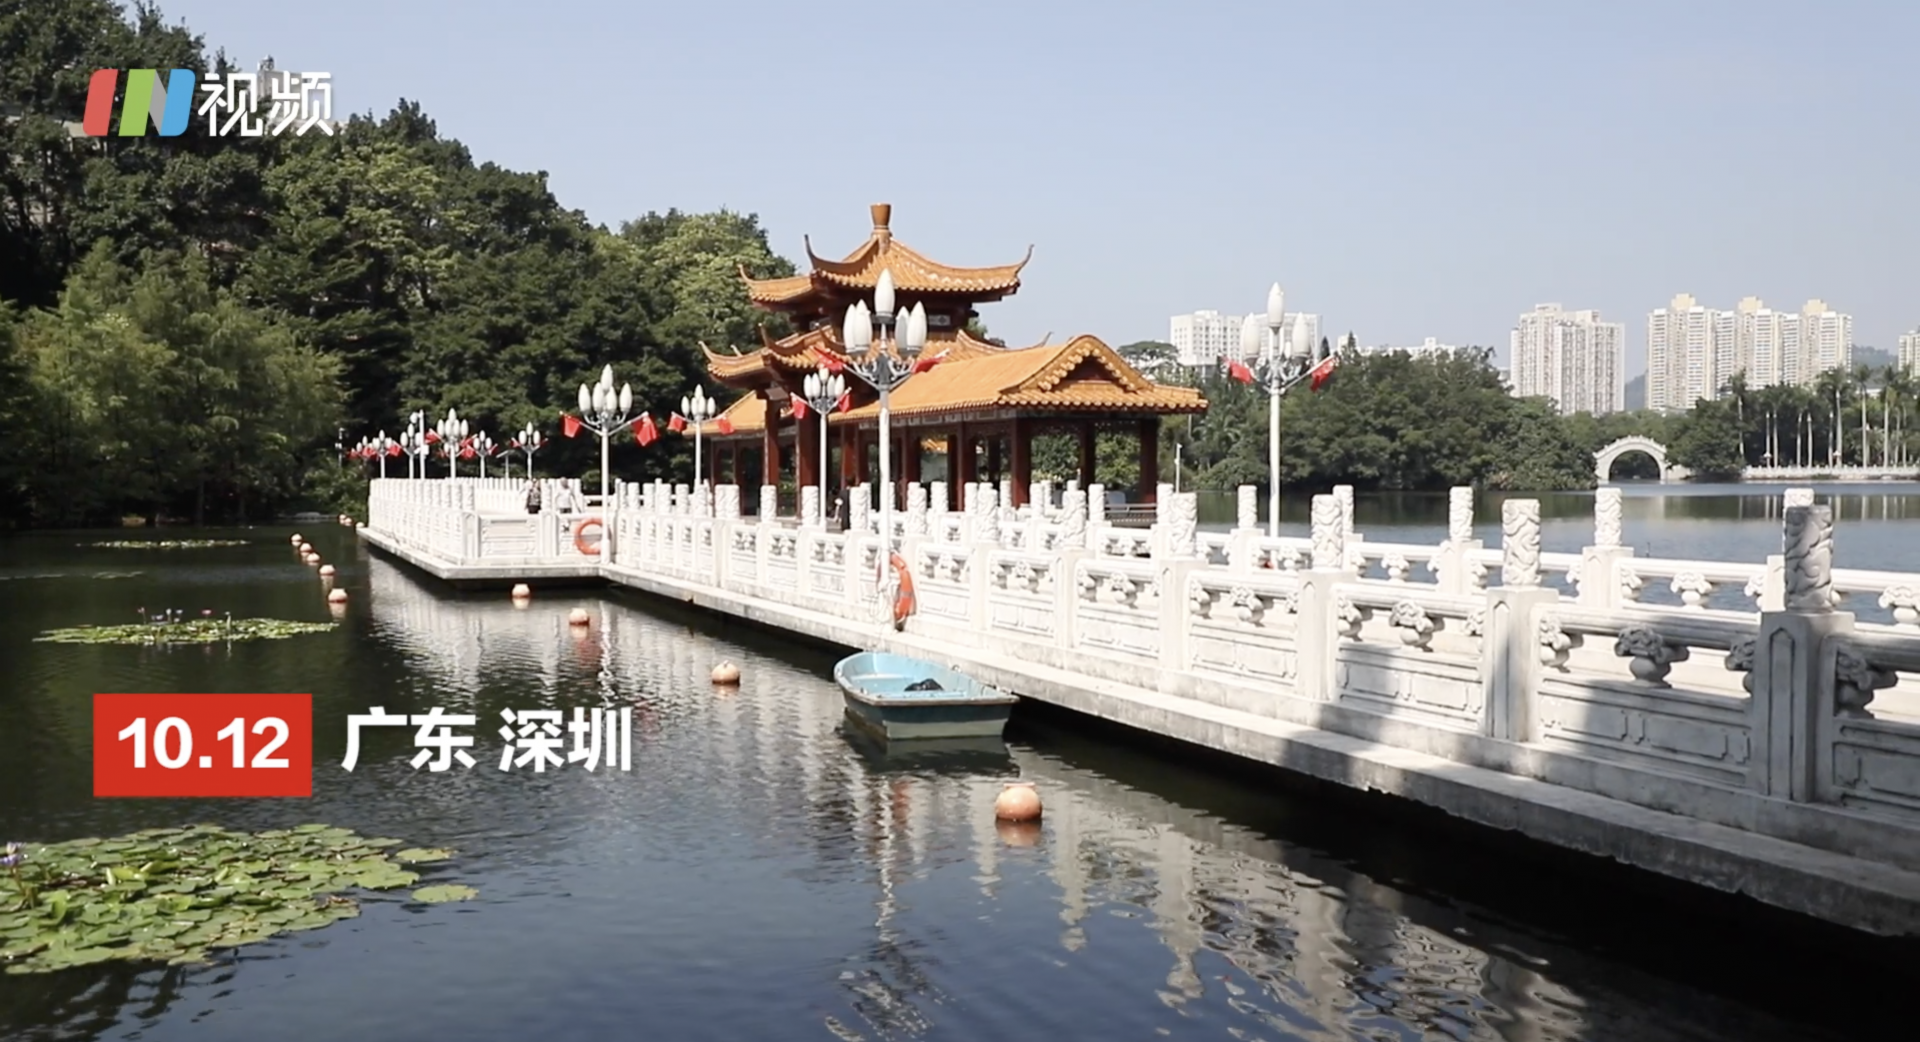 公园总数达1206个 深圳成为千园之城